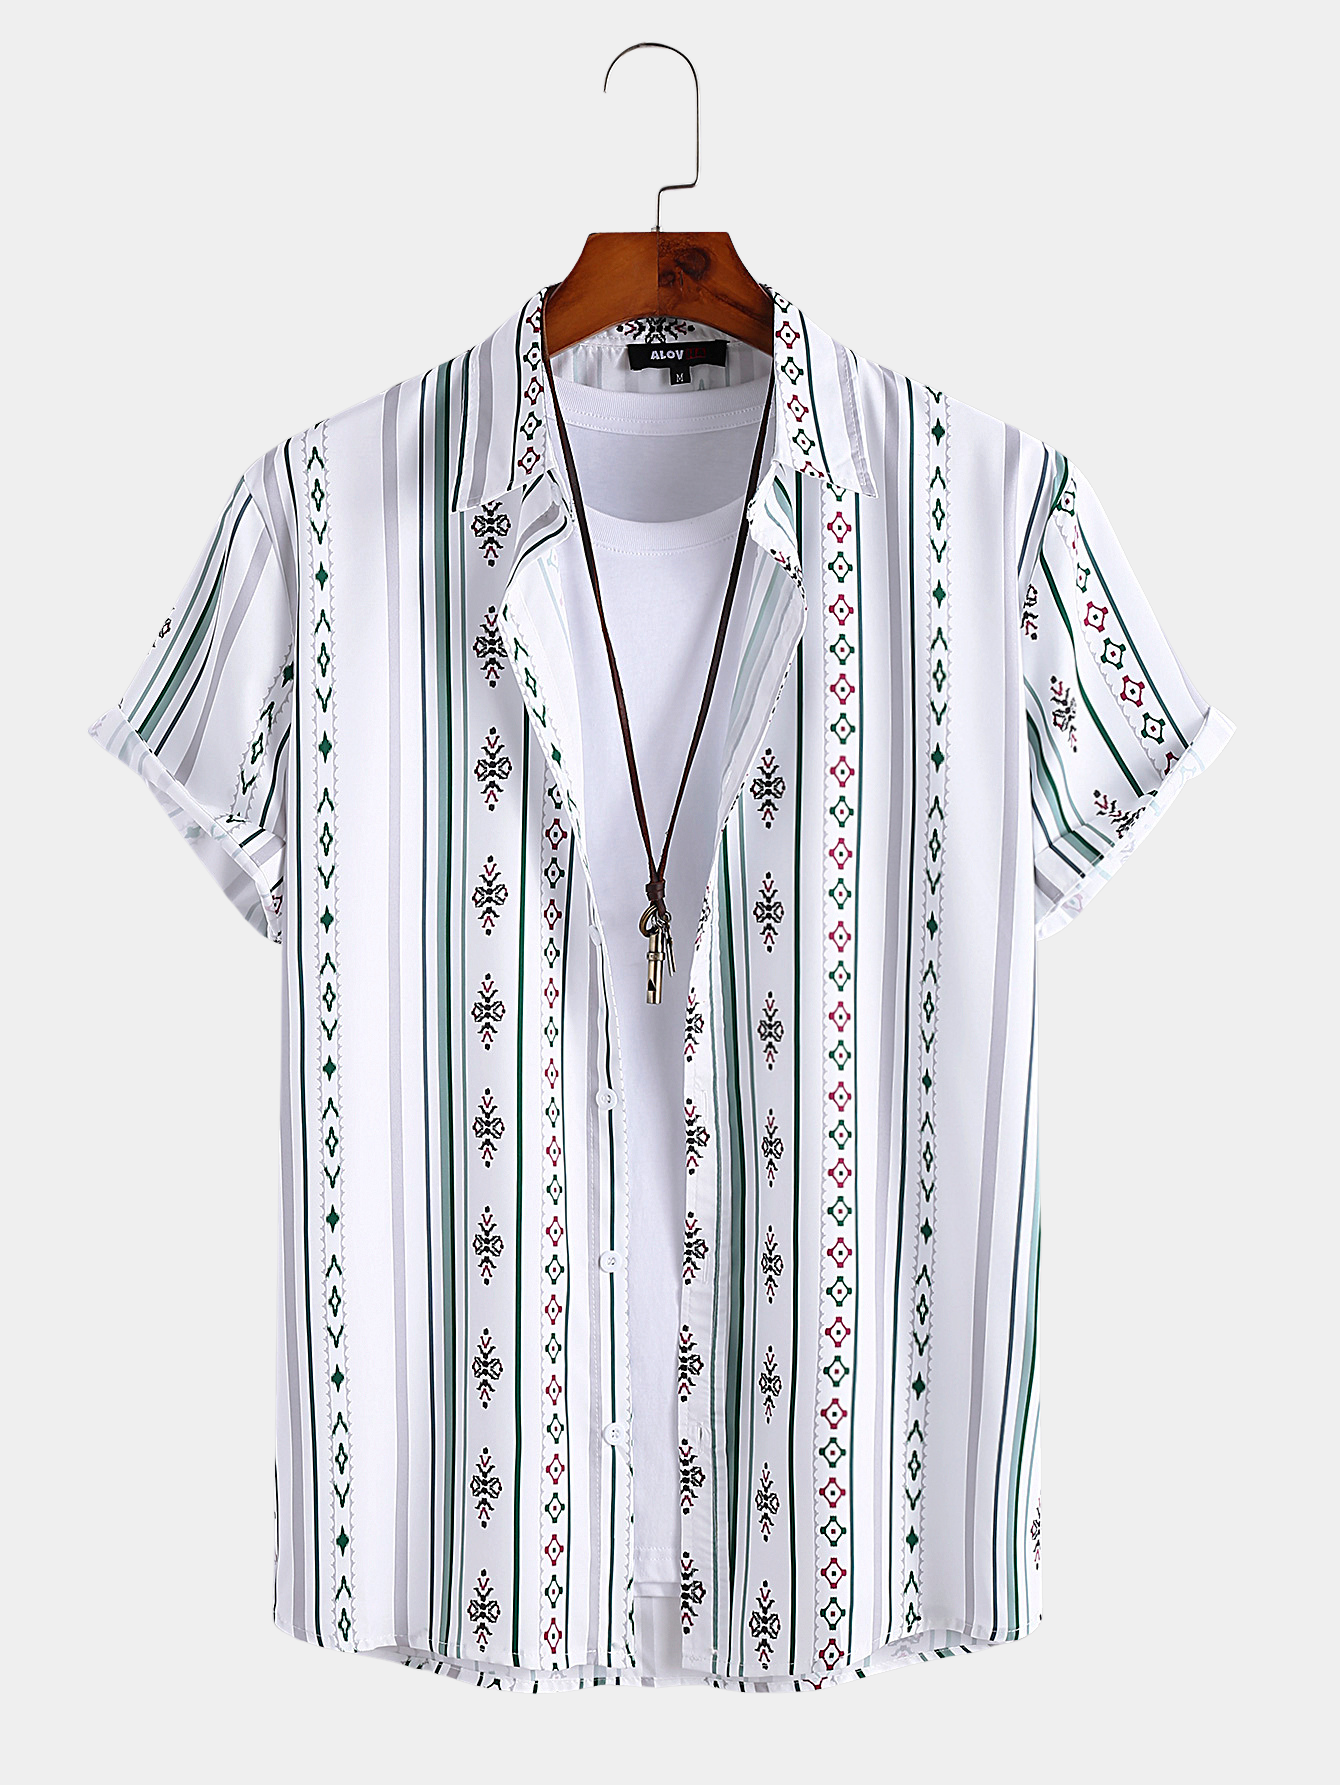 Chemise rayée blanche vintage à manches courtes et boutonnée